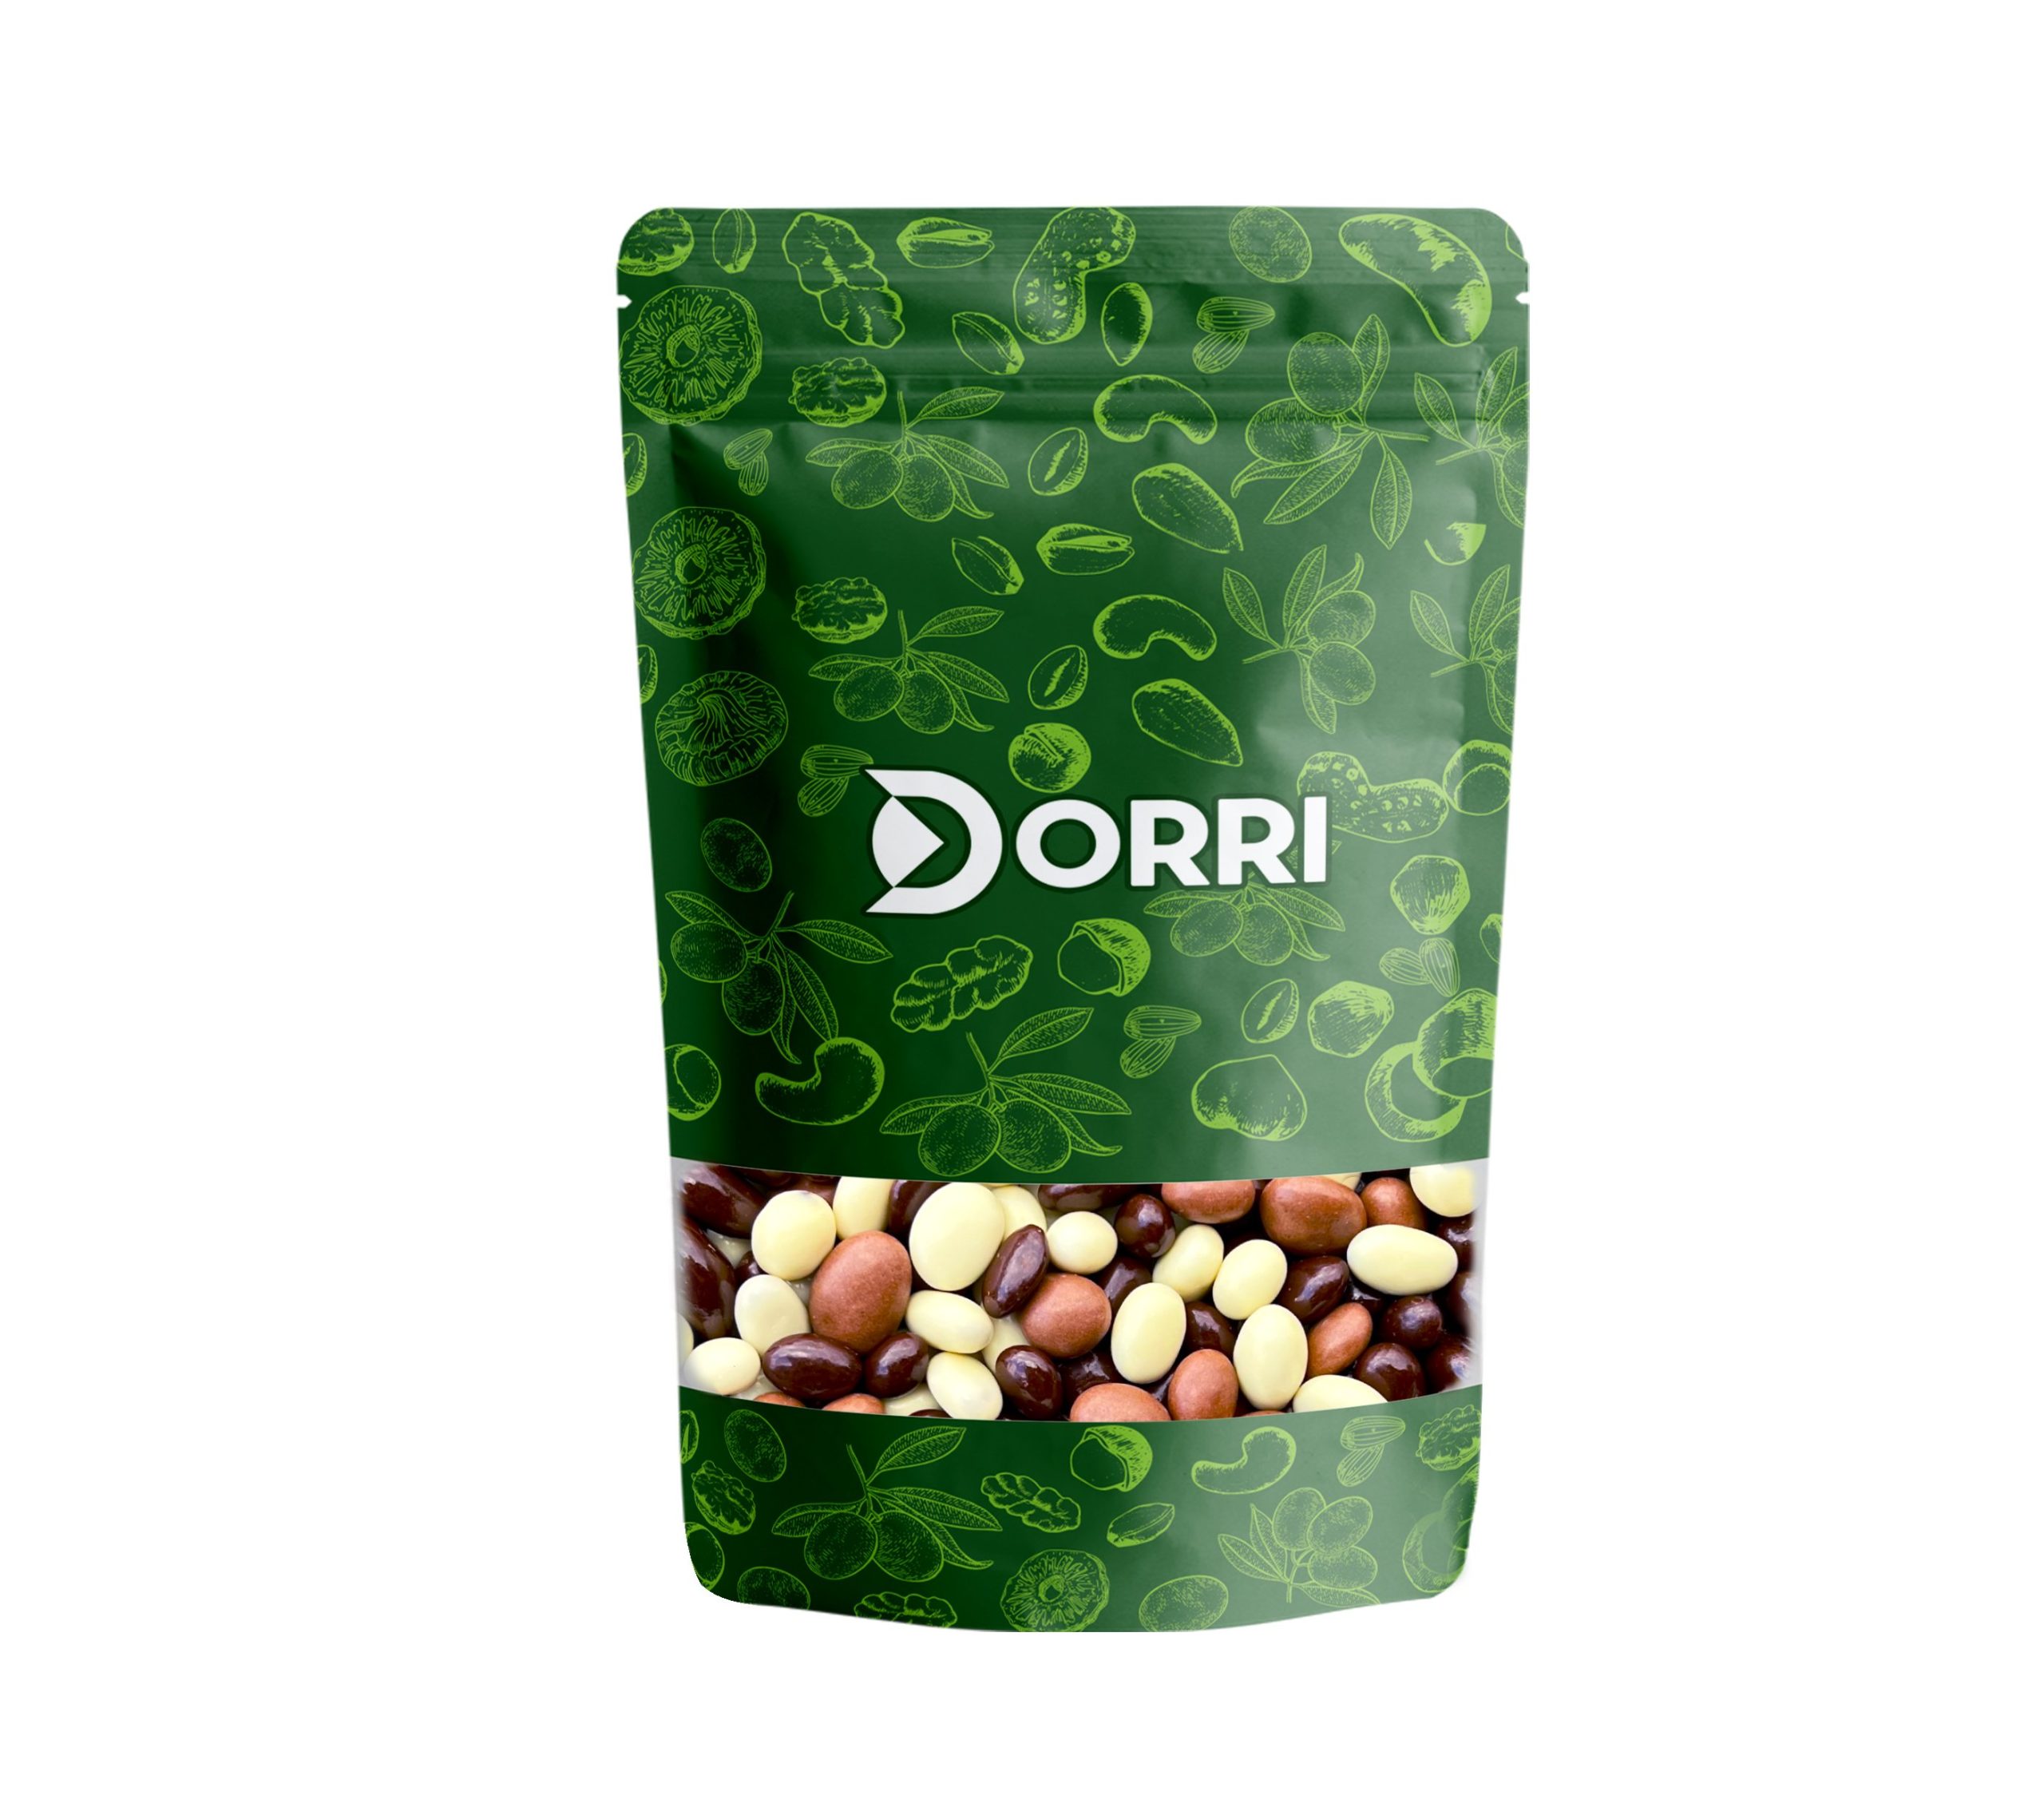 Dorri - Assorted Milk, Dark and White Chocolate Raisins